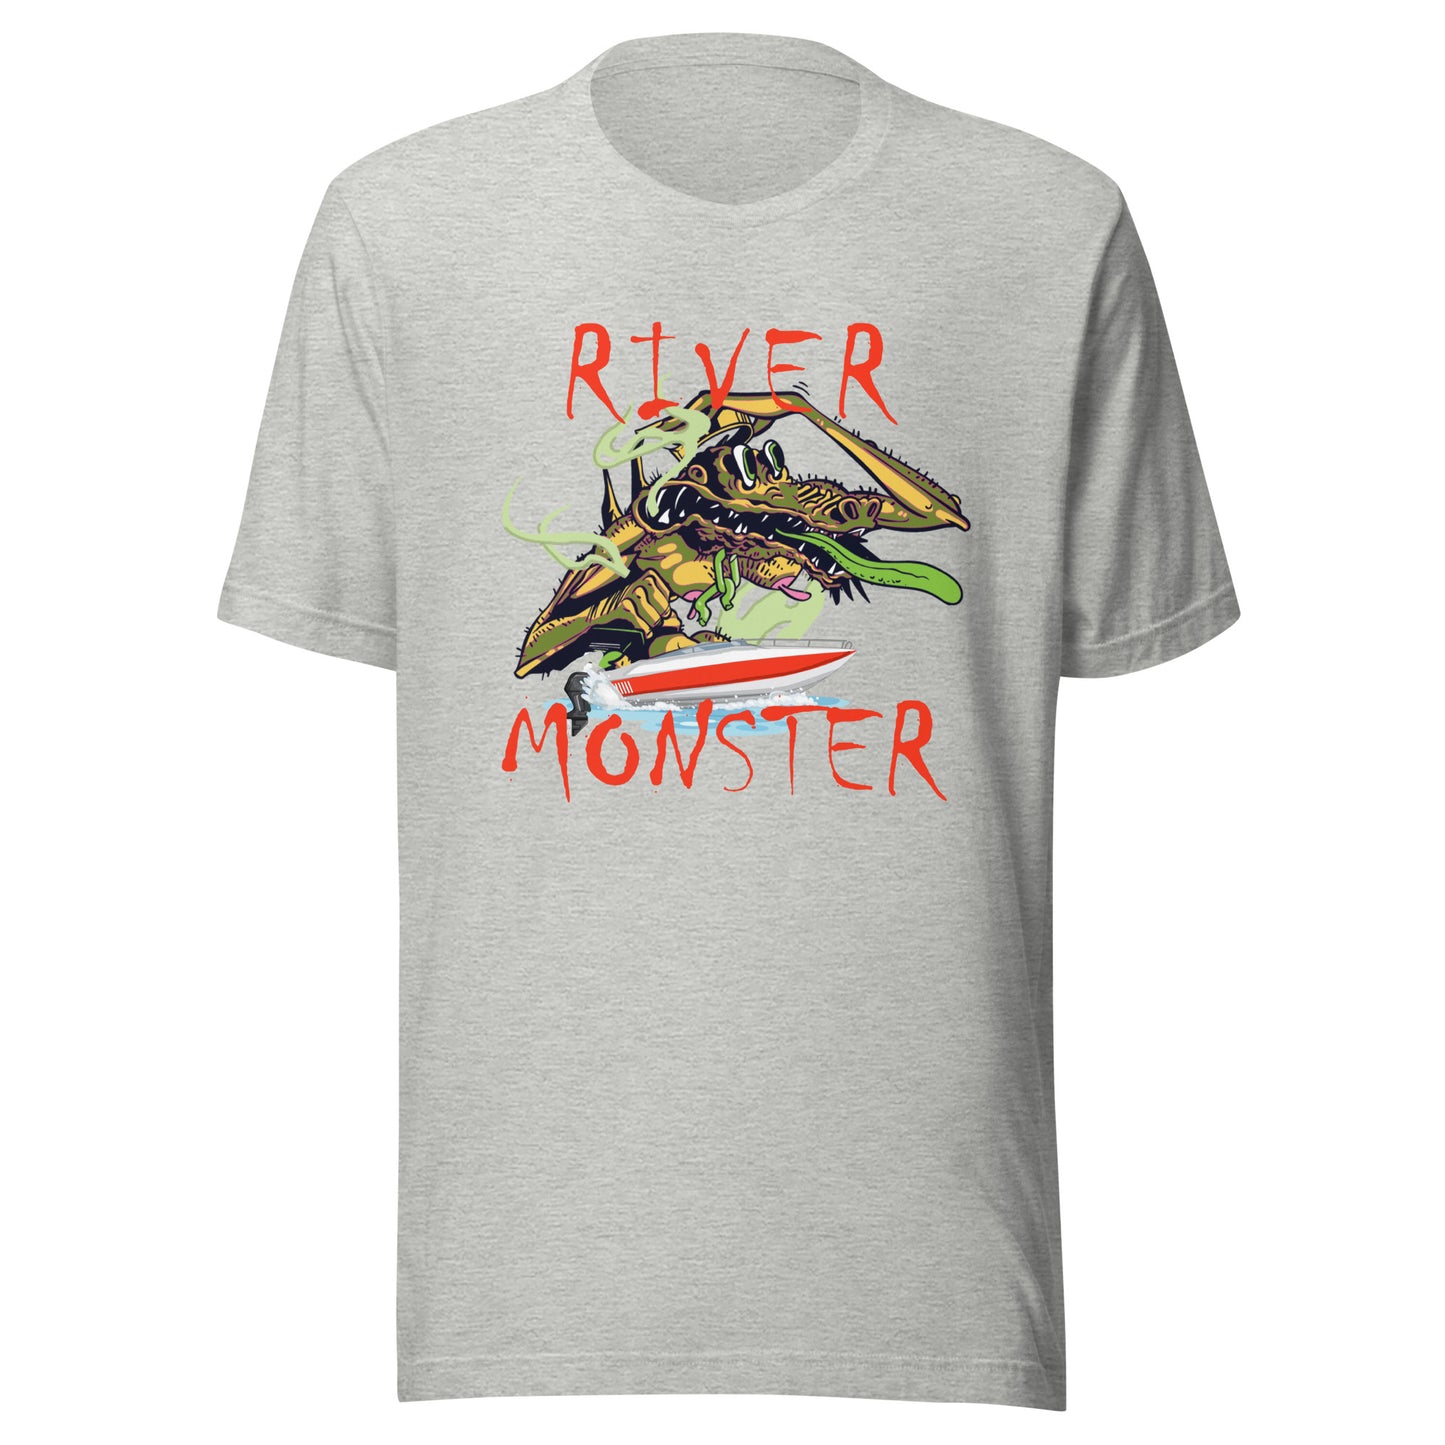 River Monster T-shirt